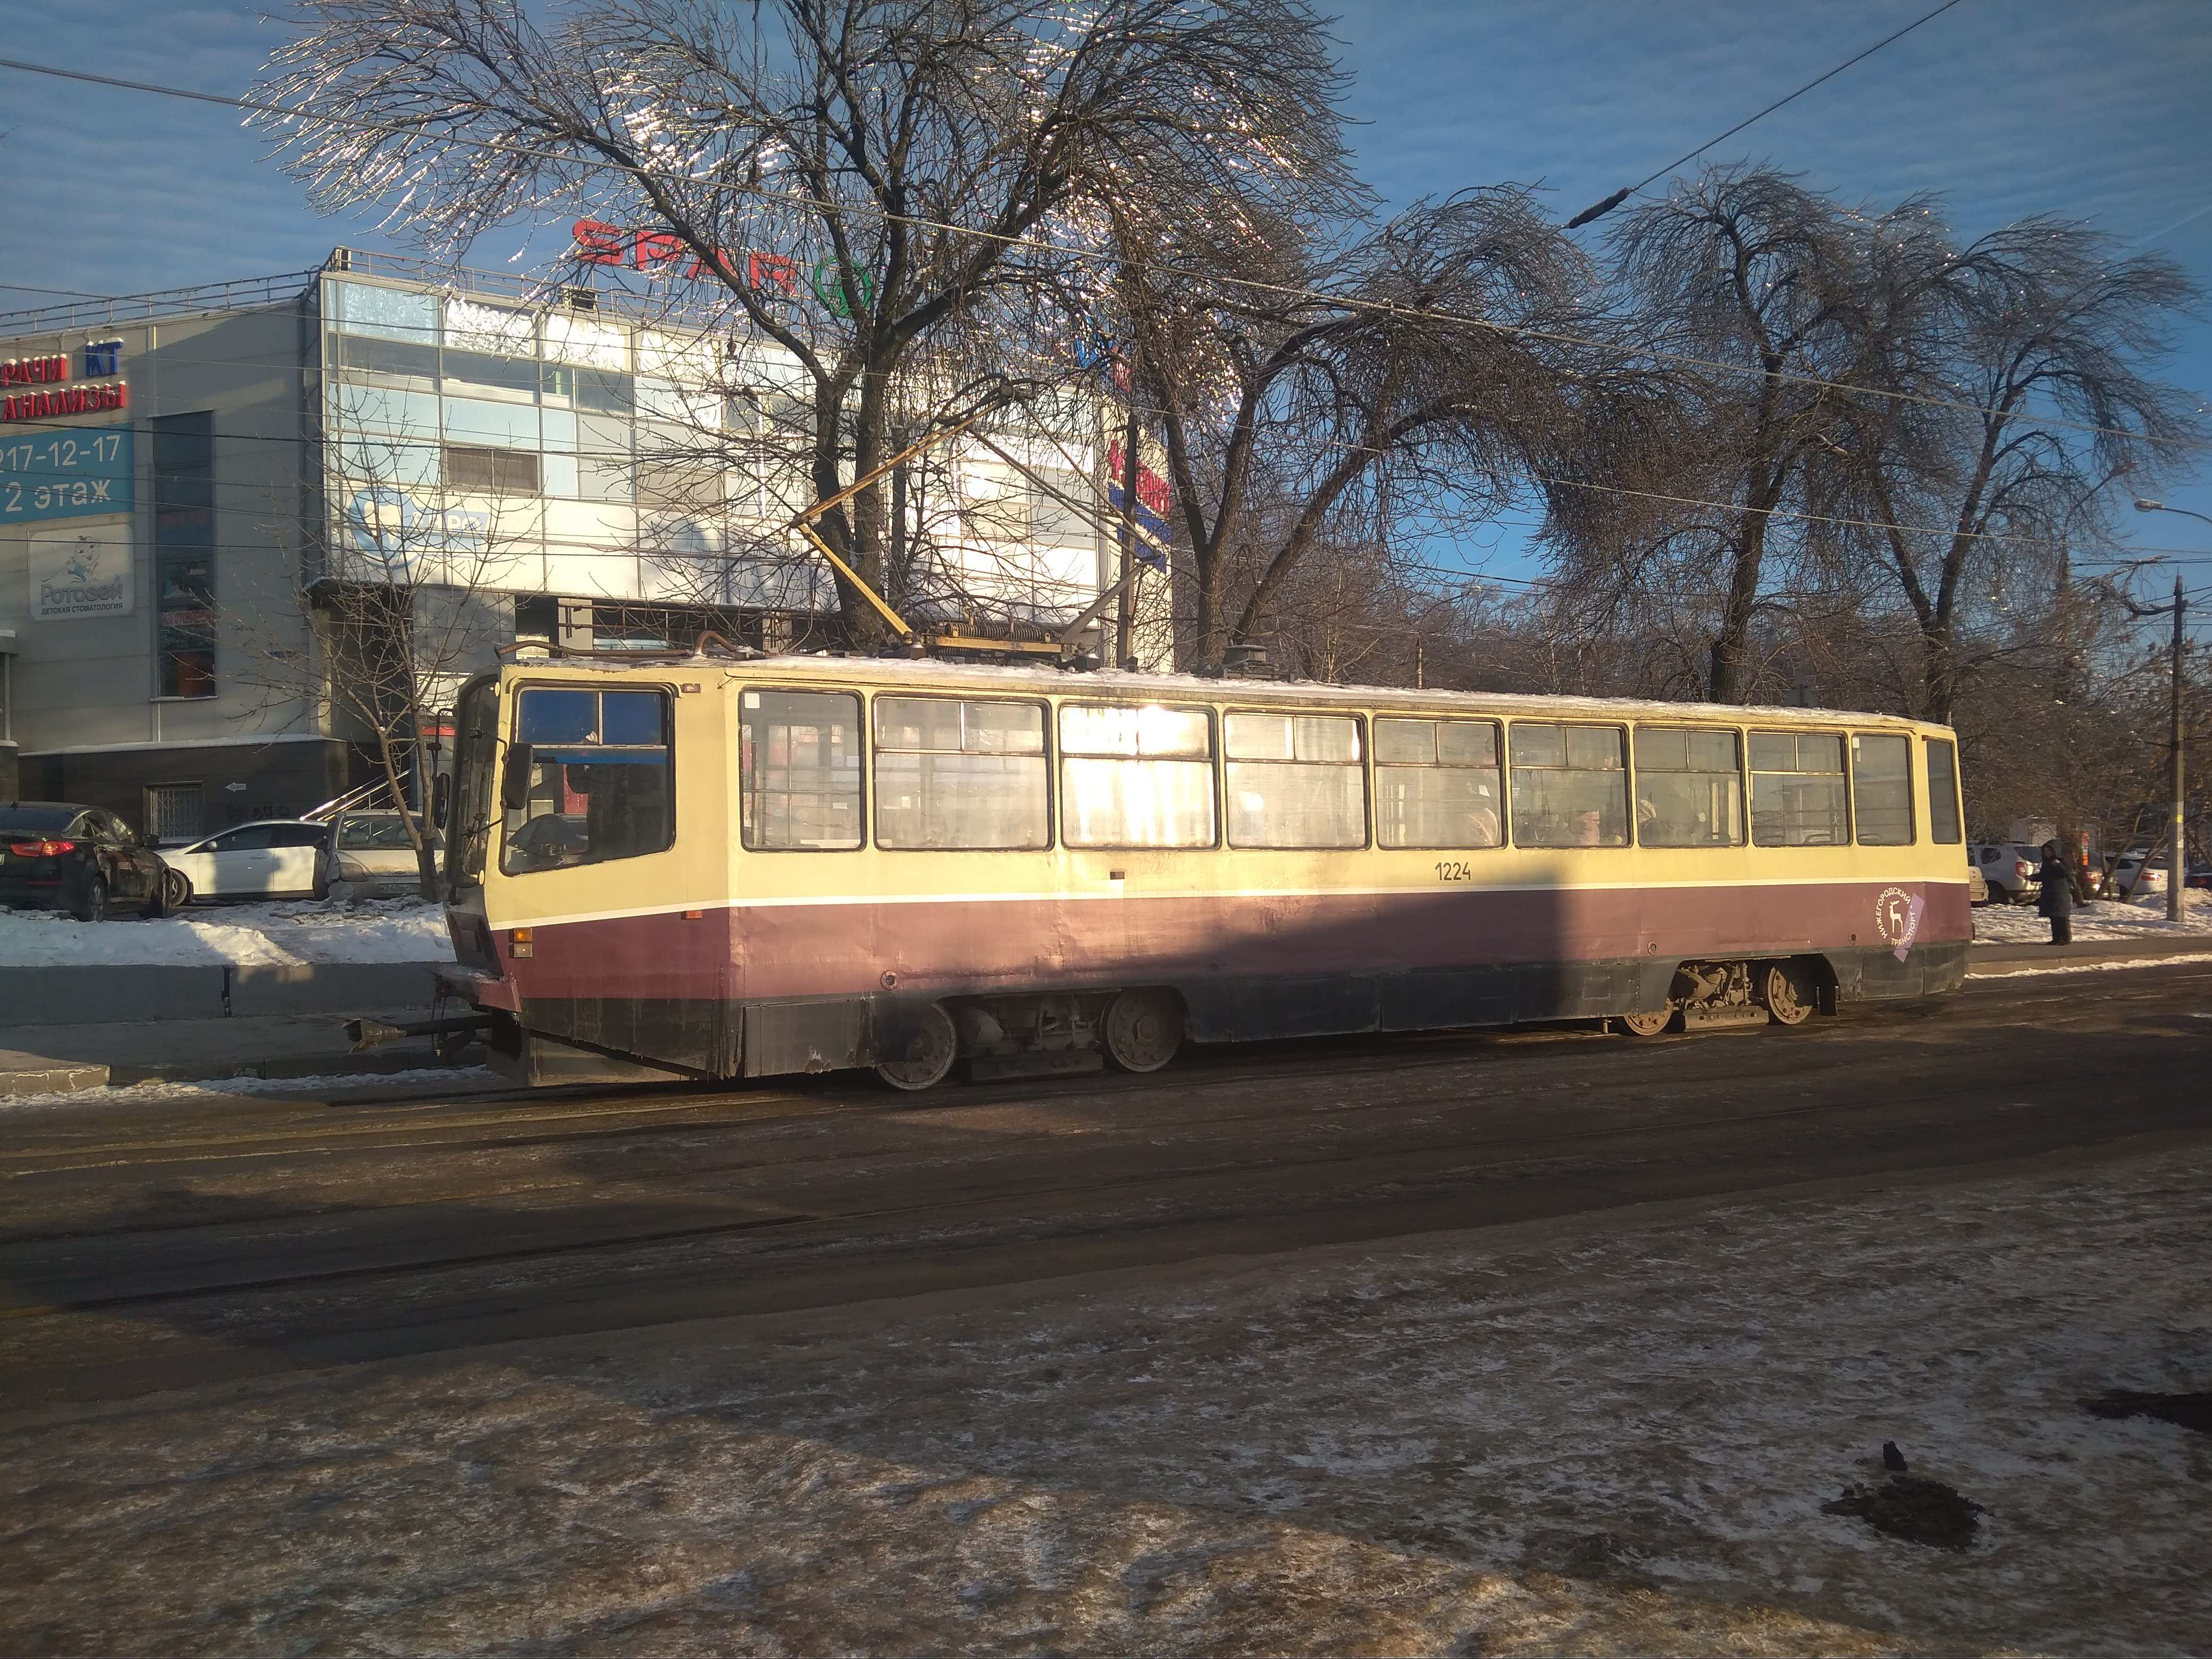 Госэкспертиза одобрила проект реконструкции трамвайной линии у Мызы в Нижнем Новгороде - фото 1